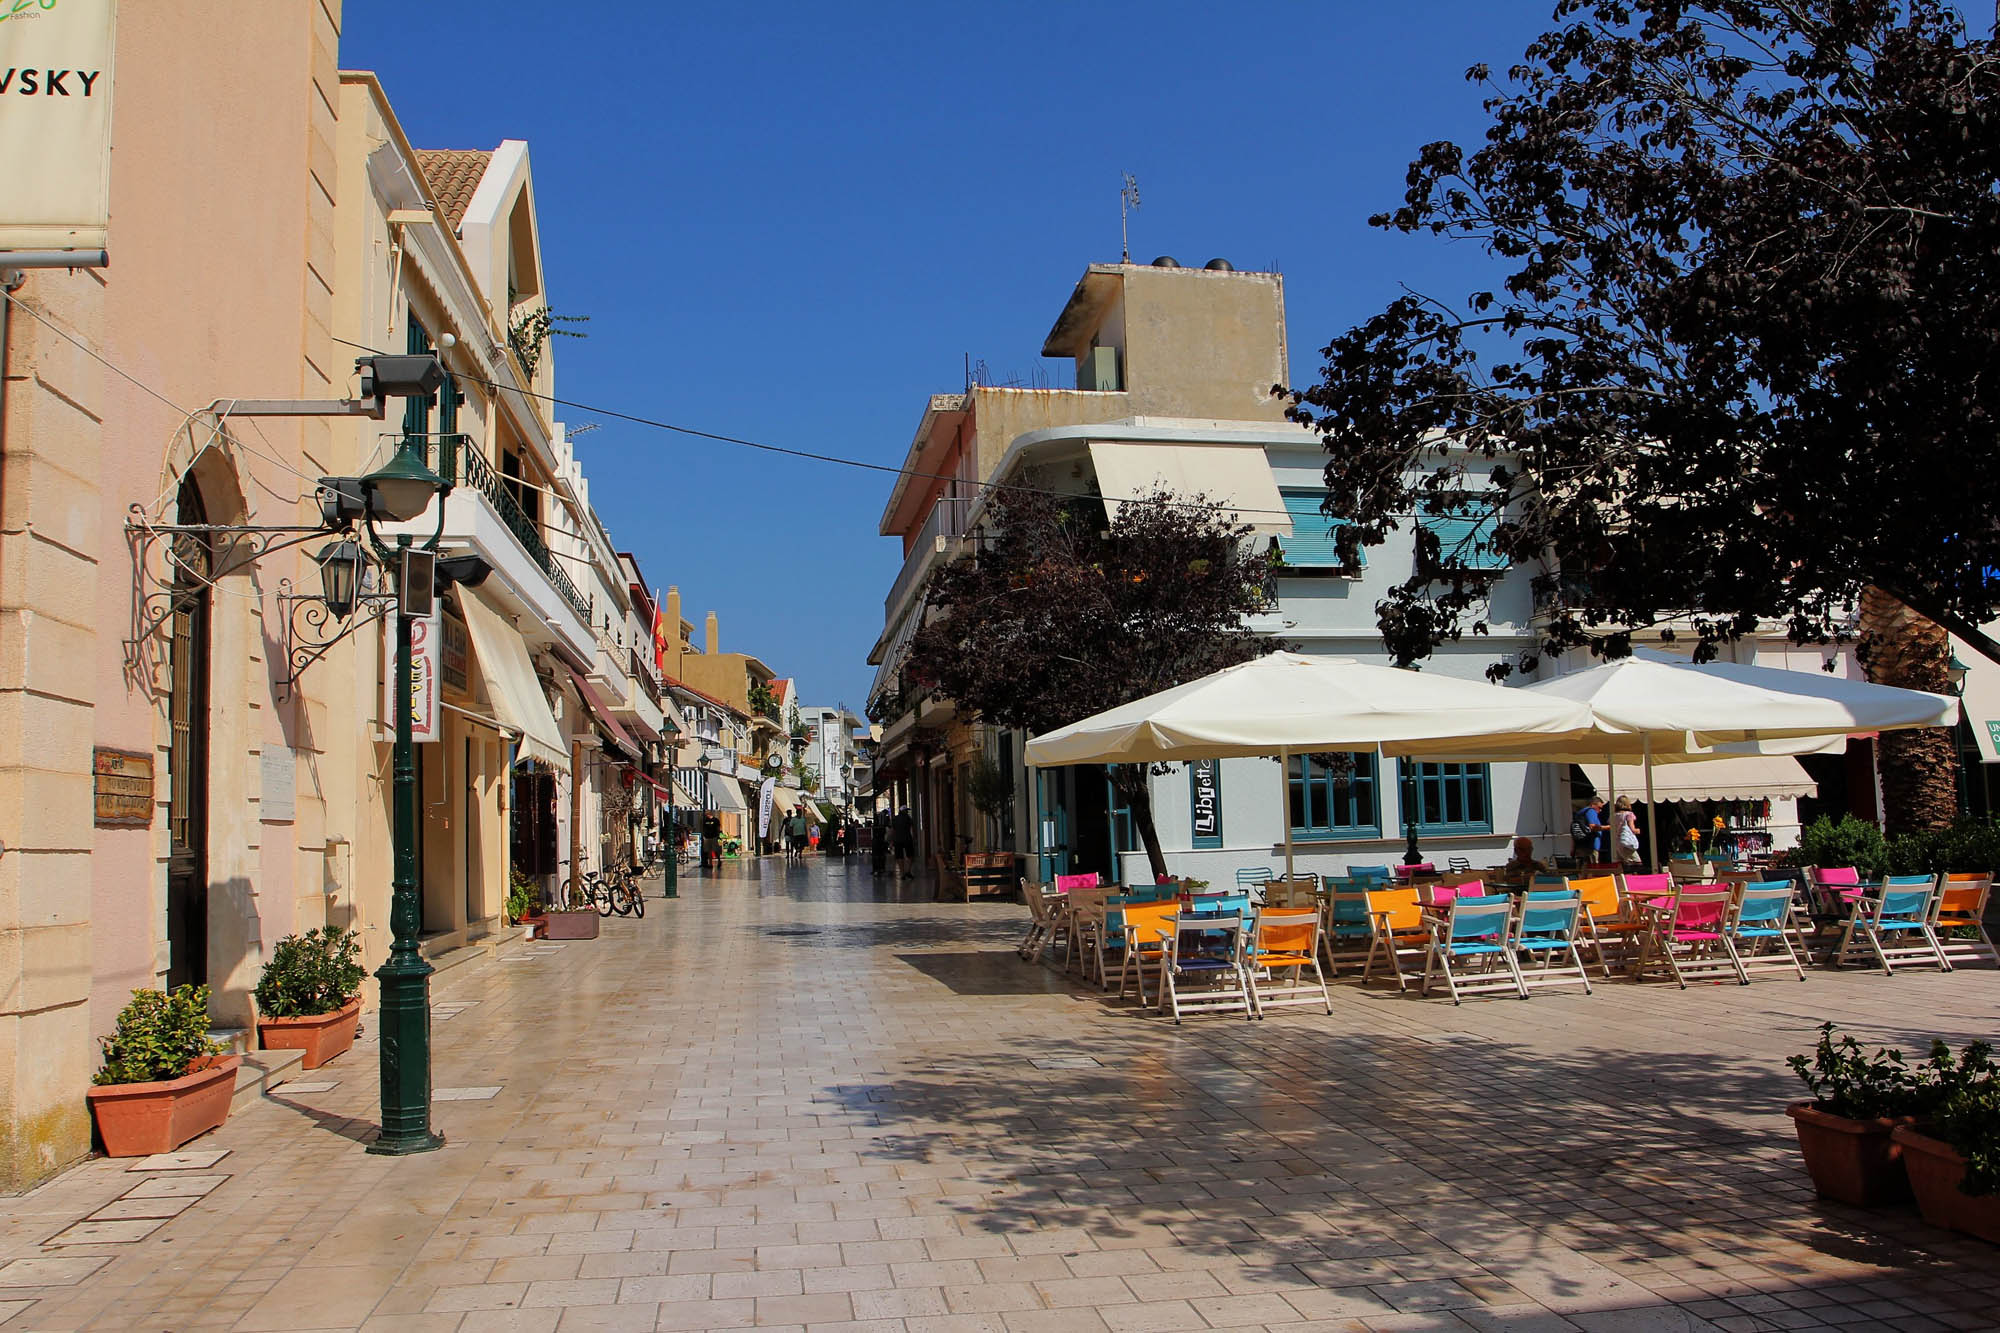 stolica wyspy Kefalonia, Argostoli, rozgrana słońcem ulica, deptak w mieście i parasolki w kafejce